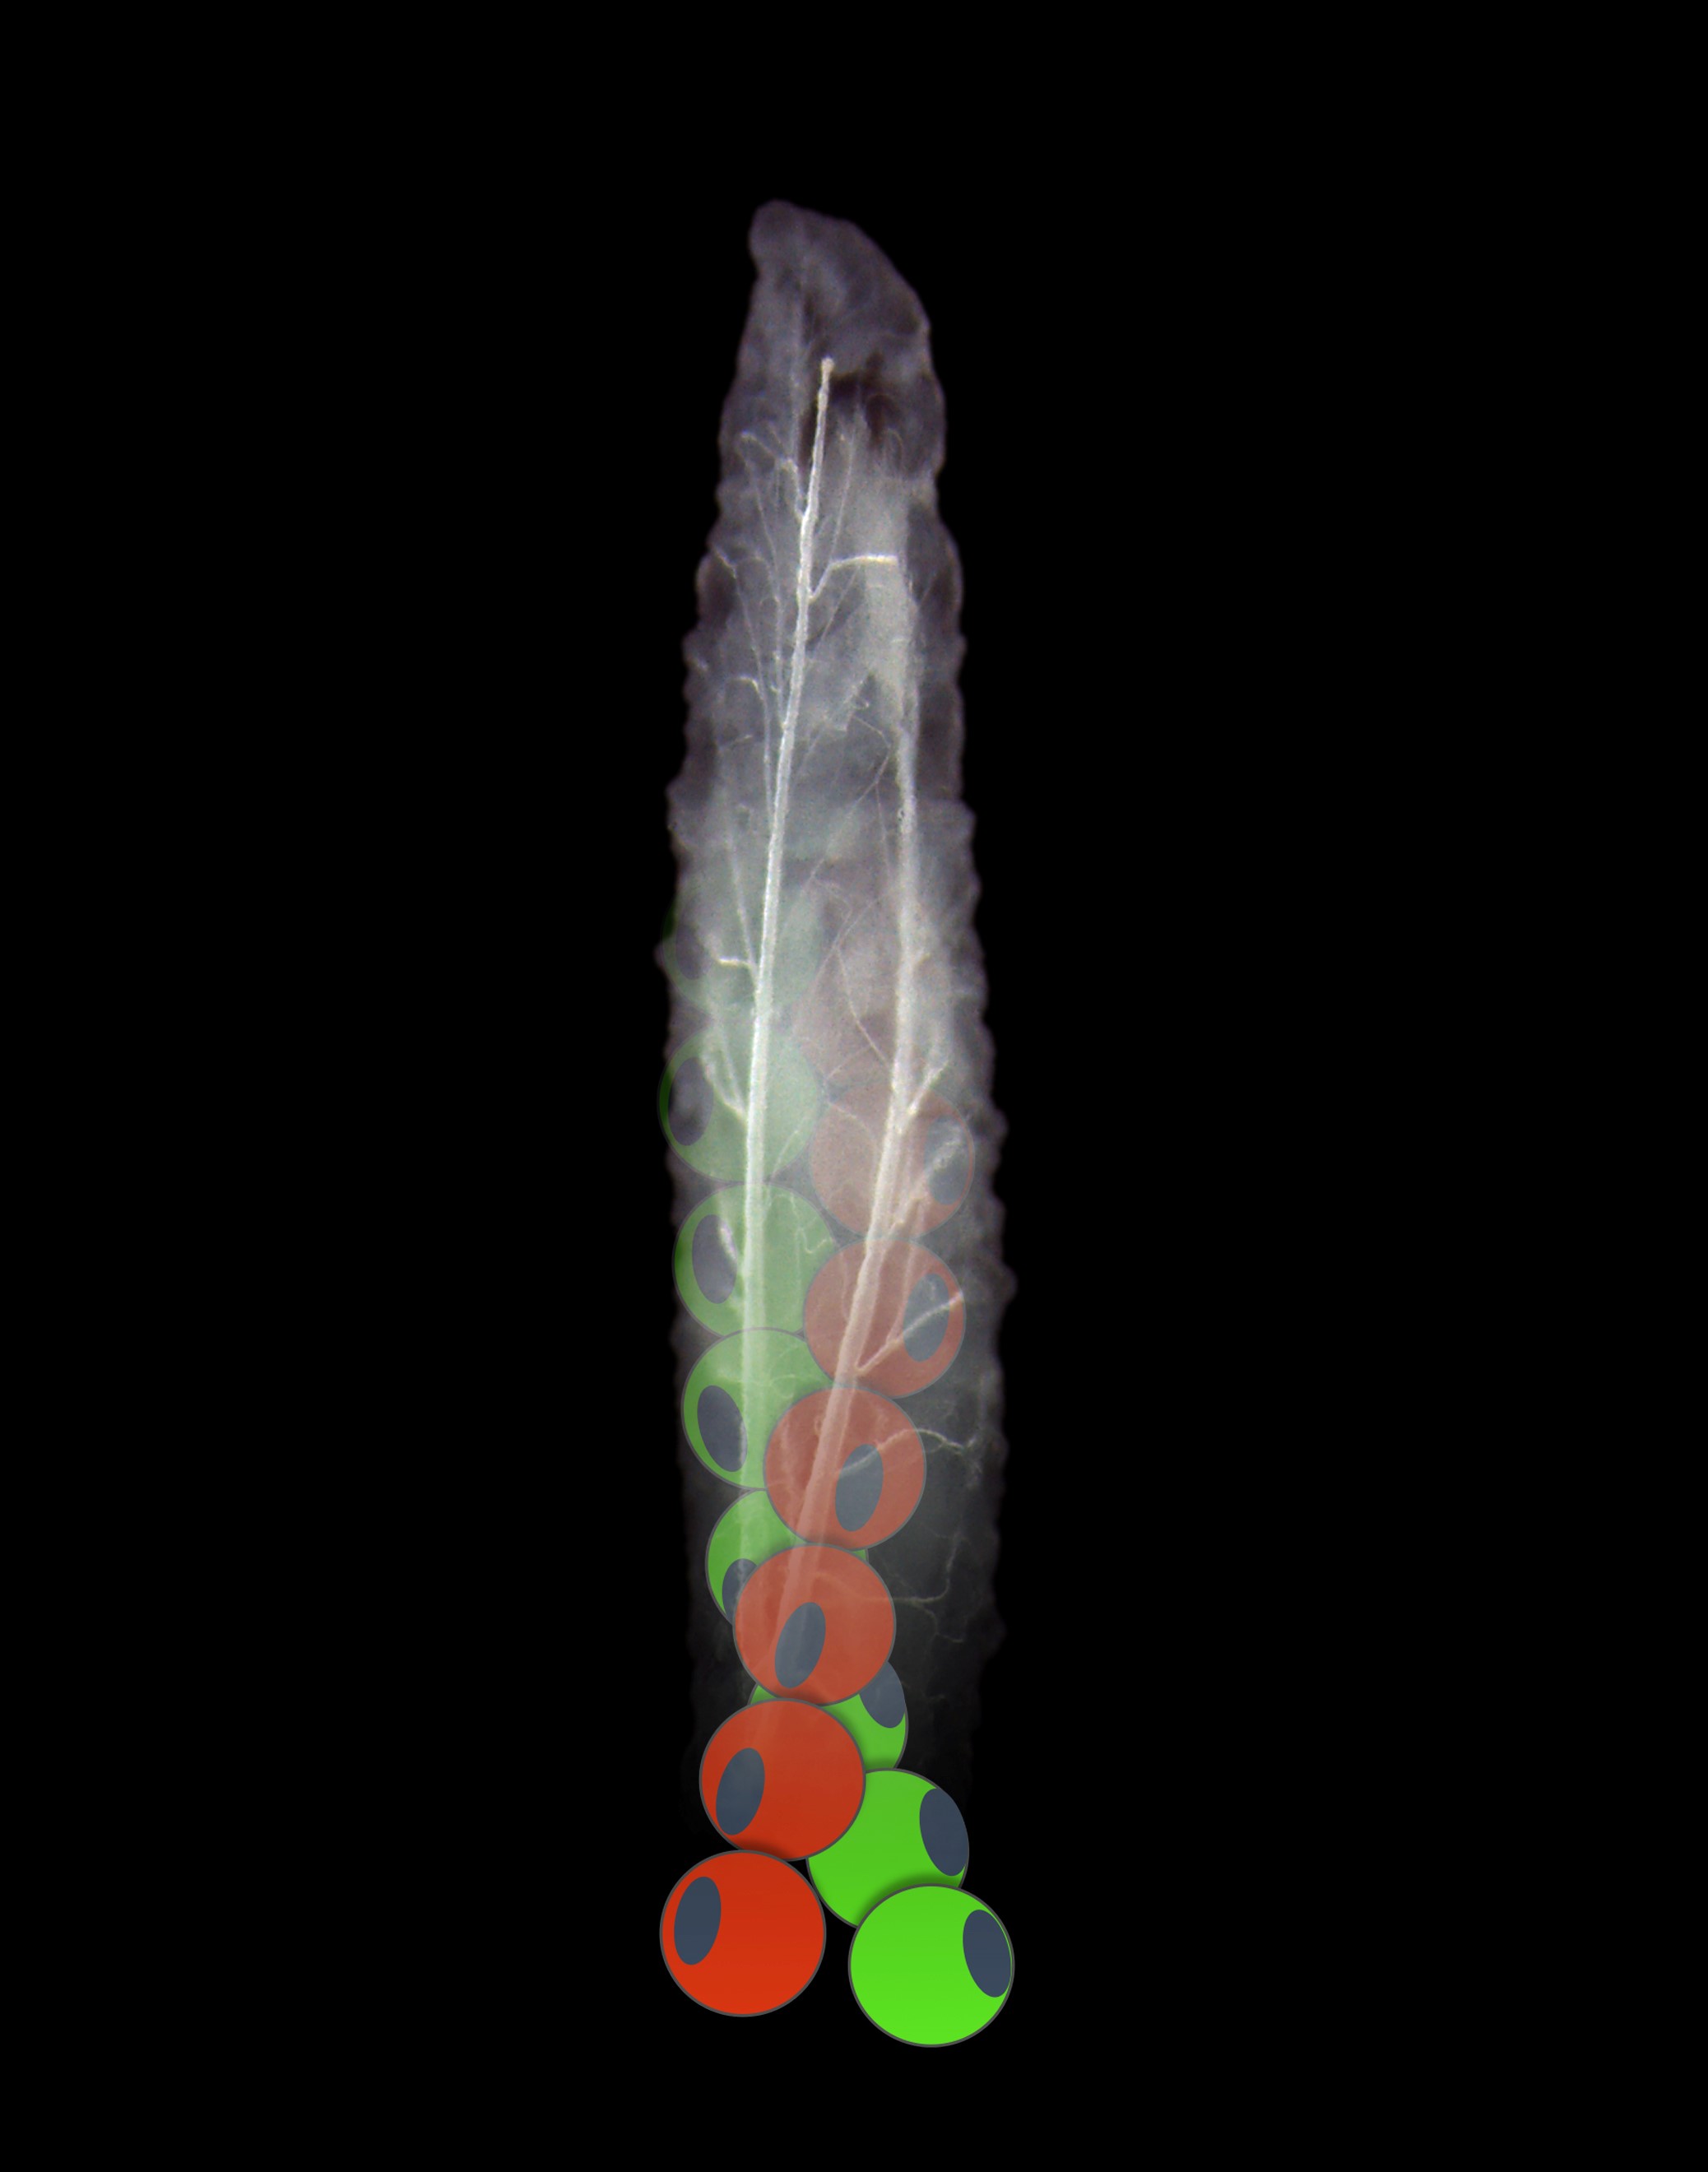 larve de drosophile (mouche) avec en surimpression une représentation des filaments d'actine